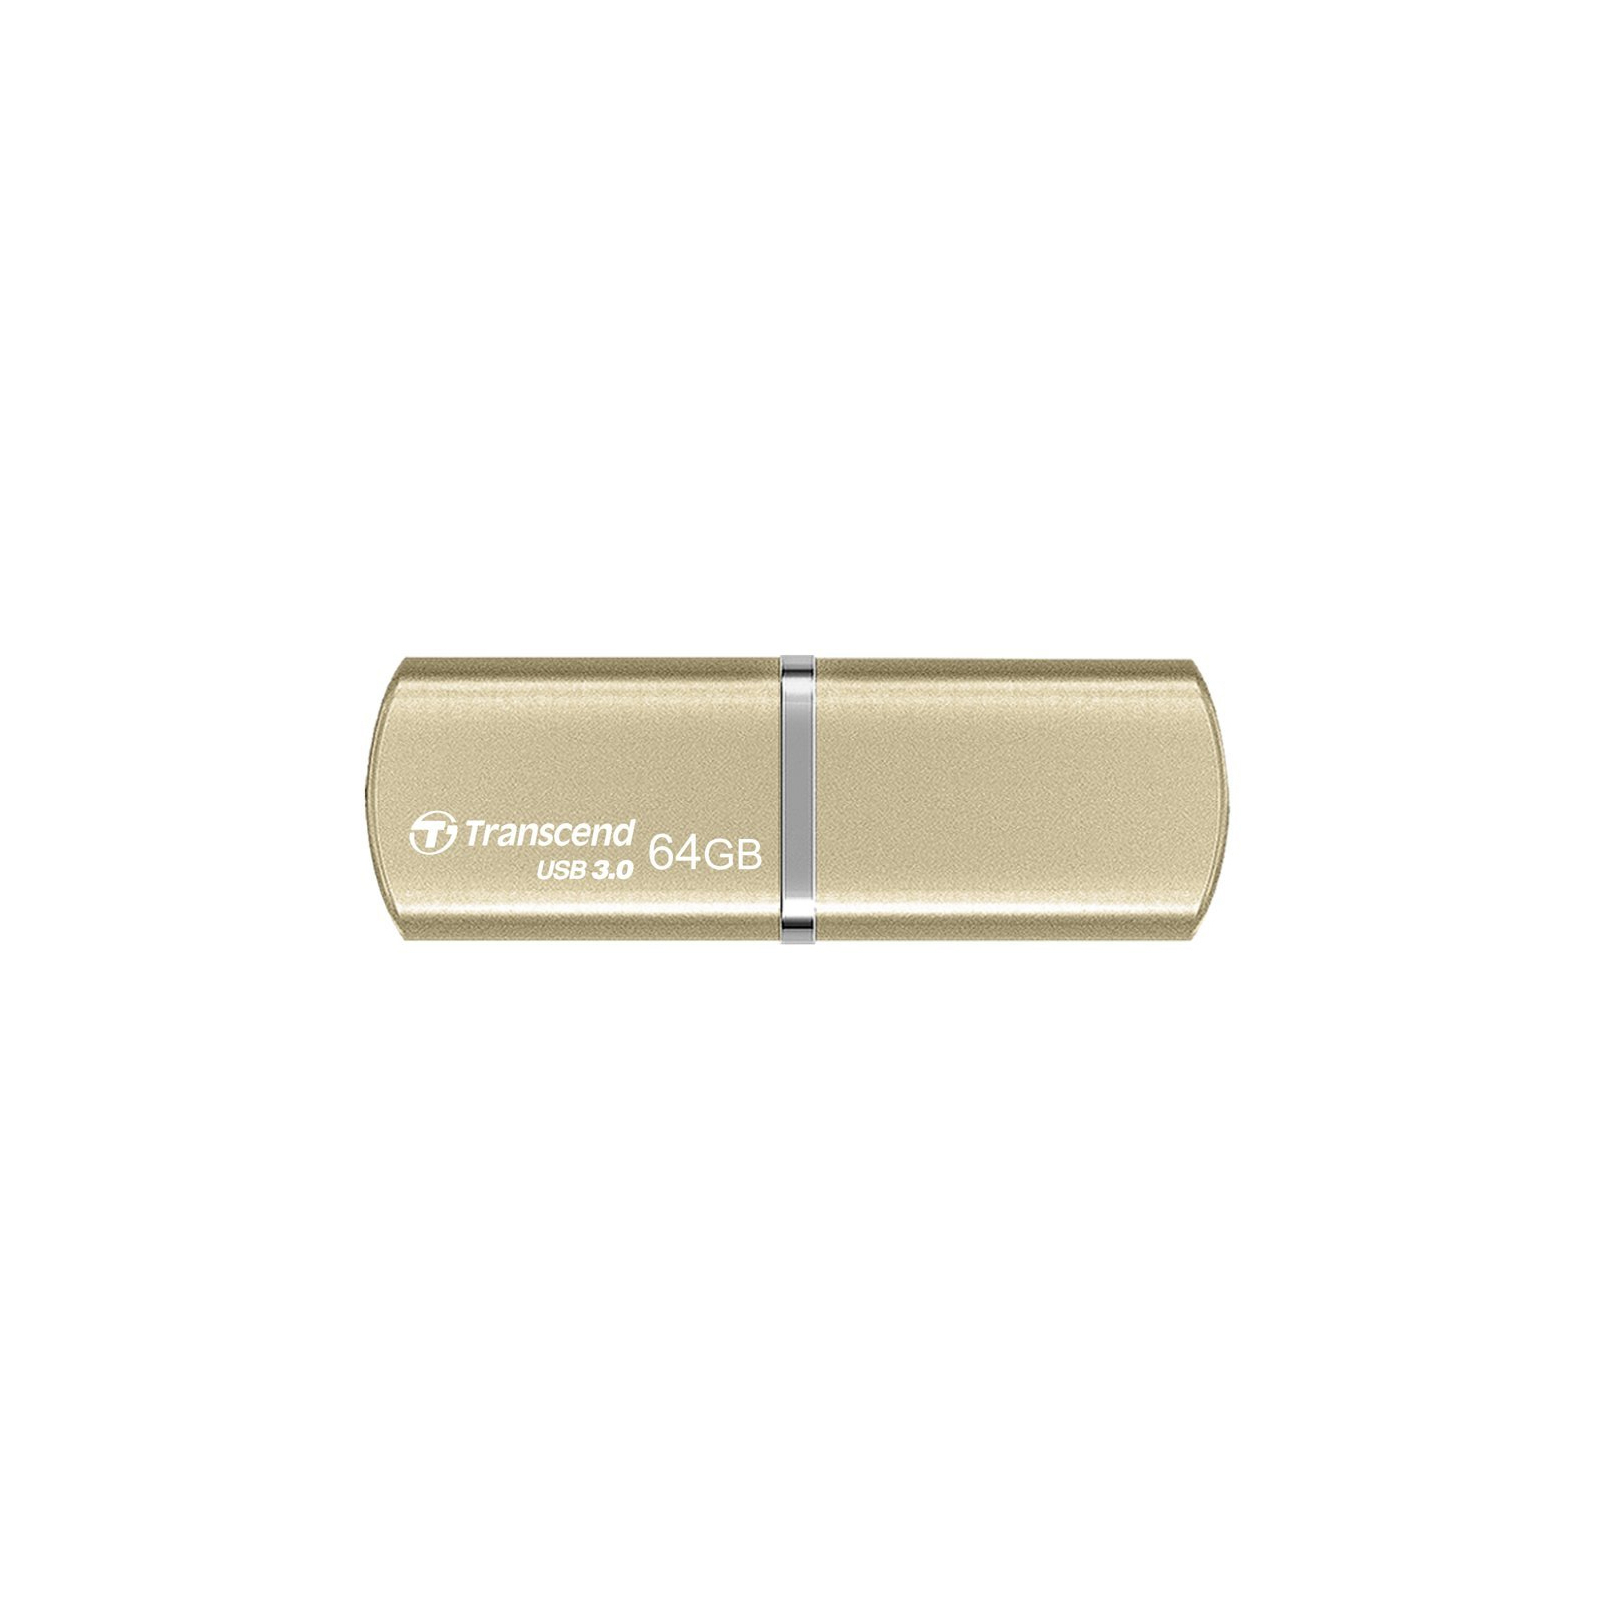 USB флеш накопитель Transcend 64GB JetFlash 820 USB 3.0 (TS64GJF820G)